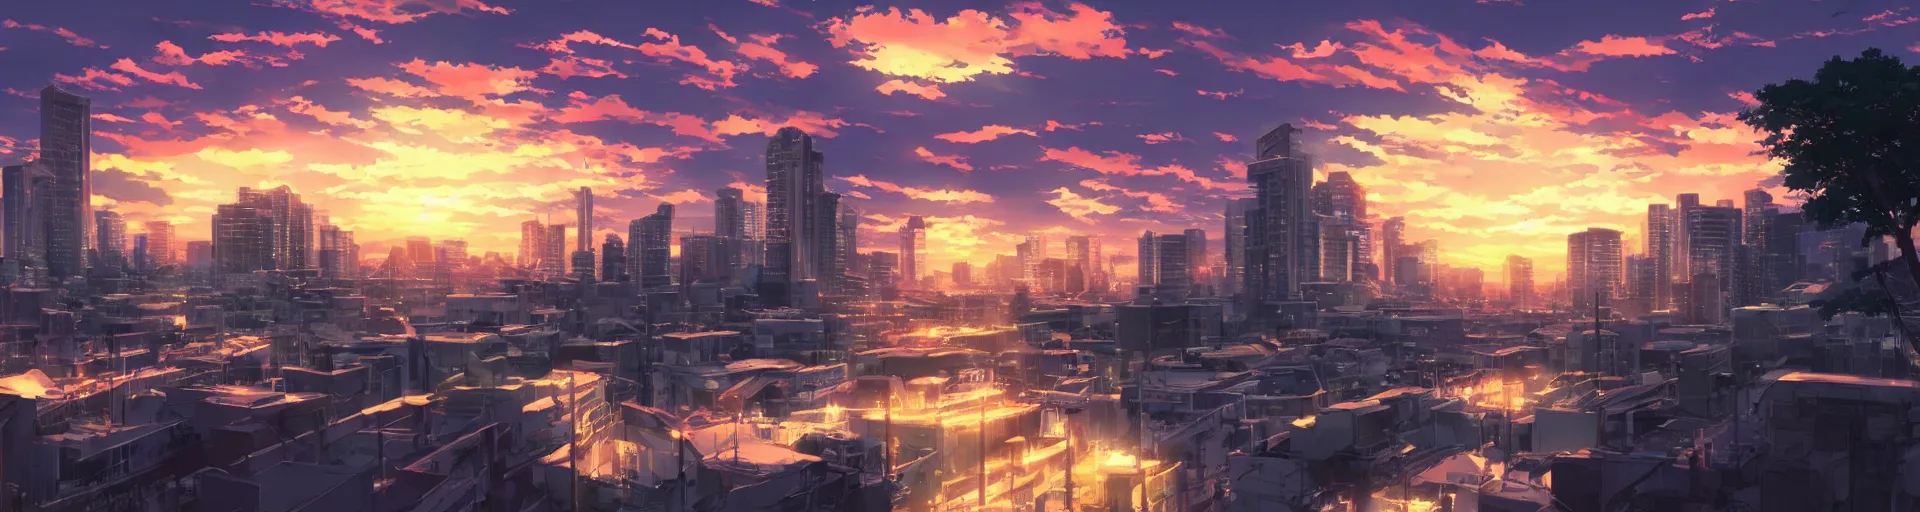 Prompt: beautiful anime sunset cityscape makoto shinkai - H 1080